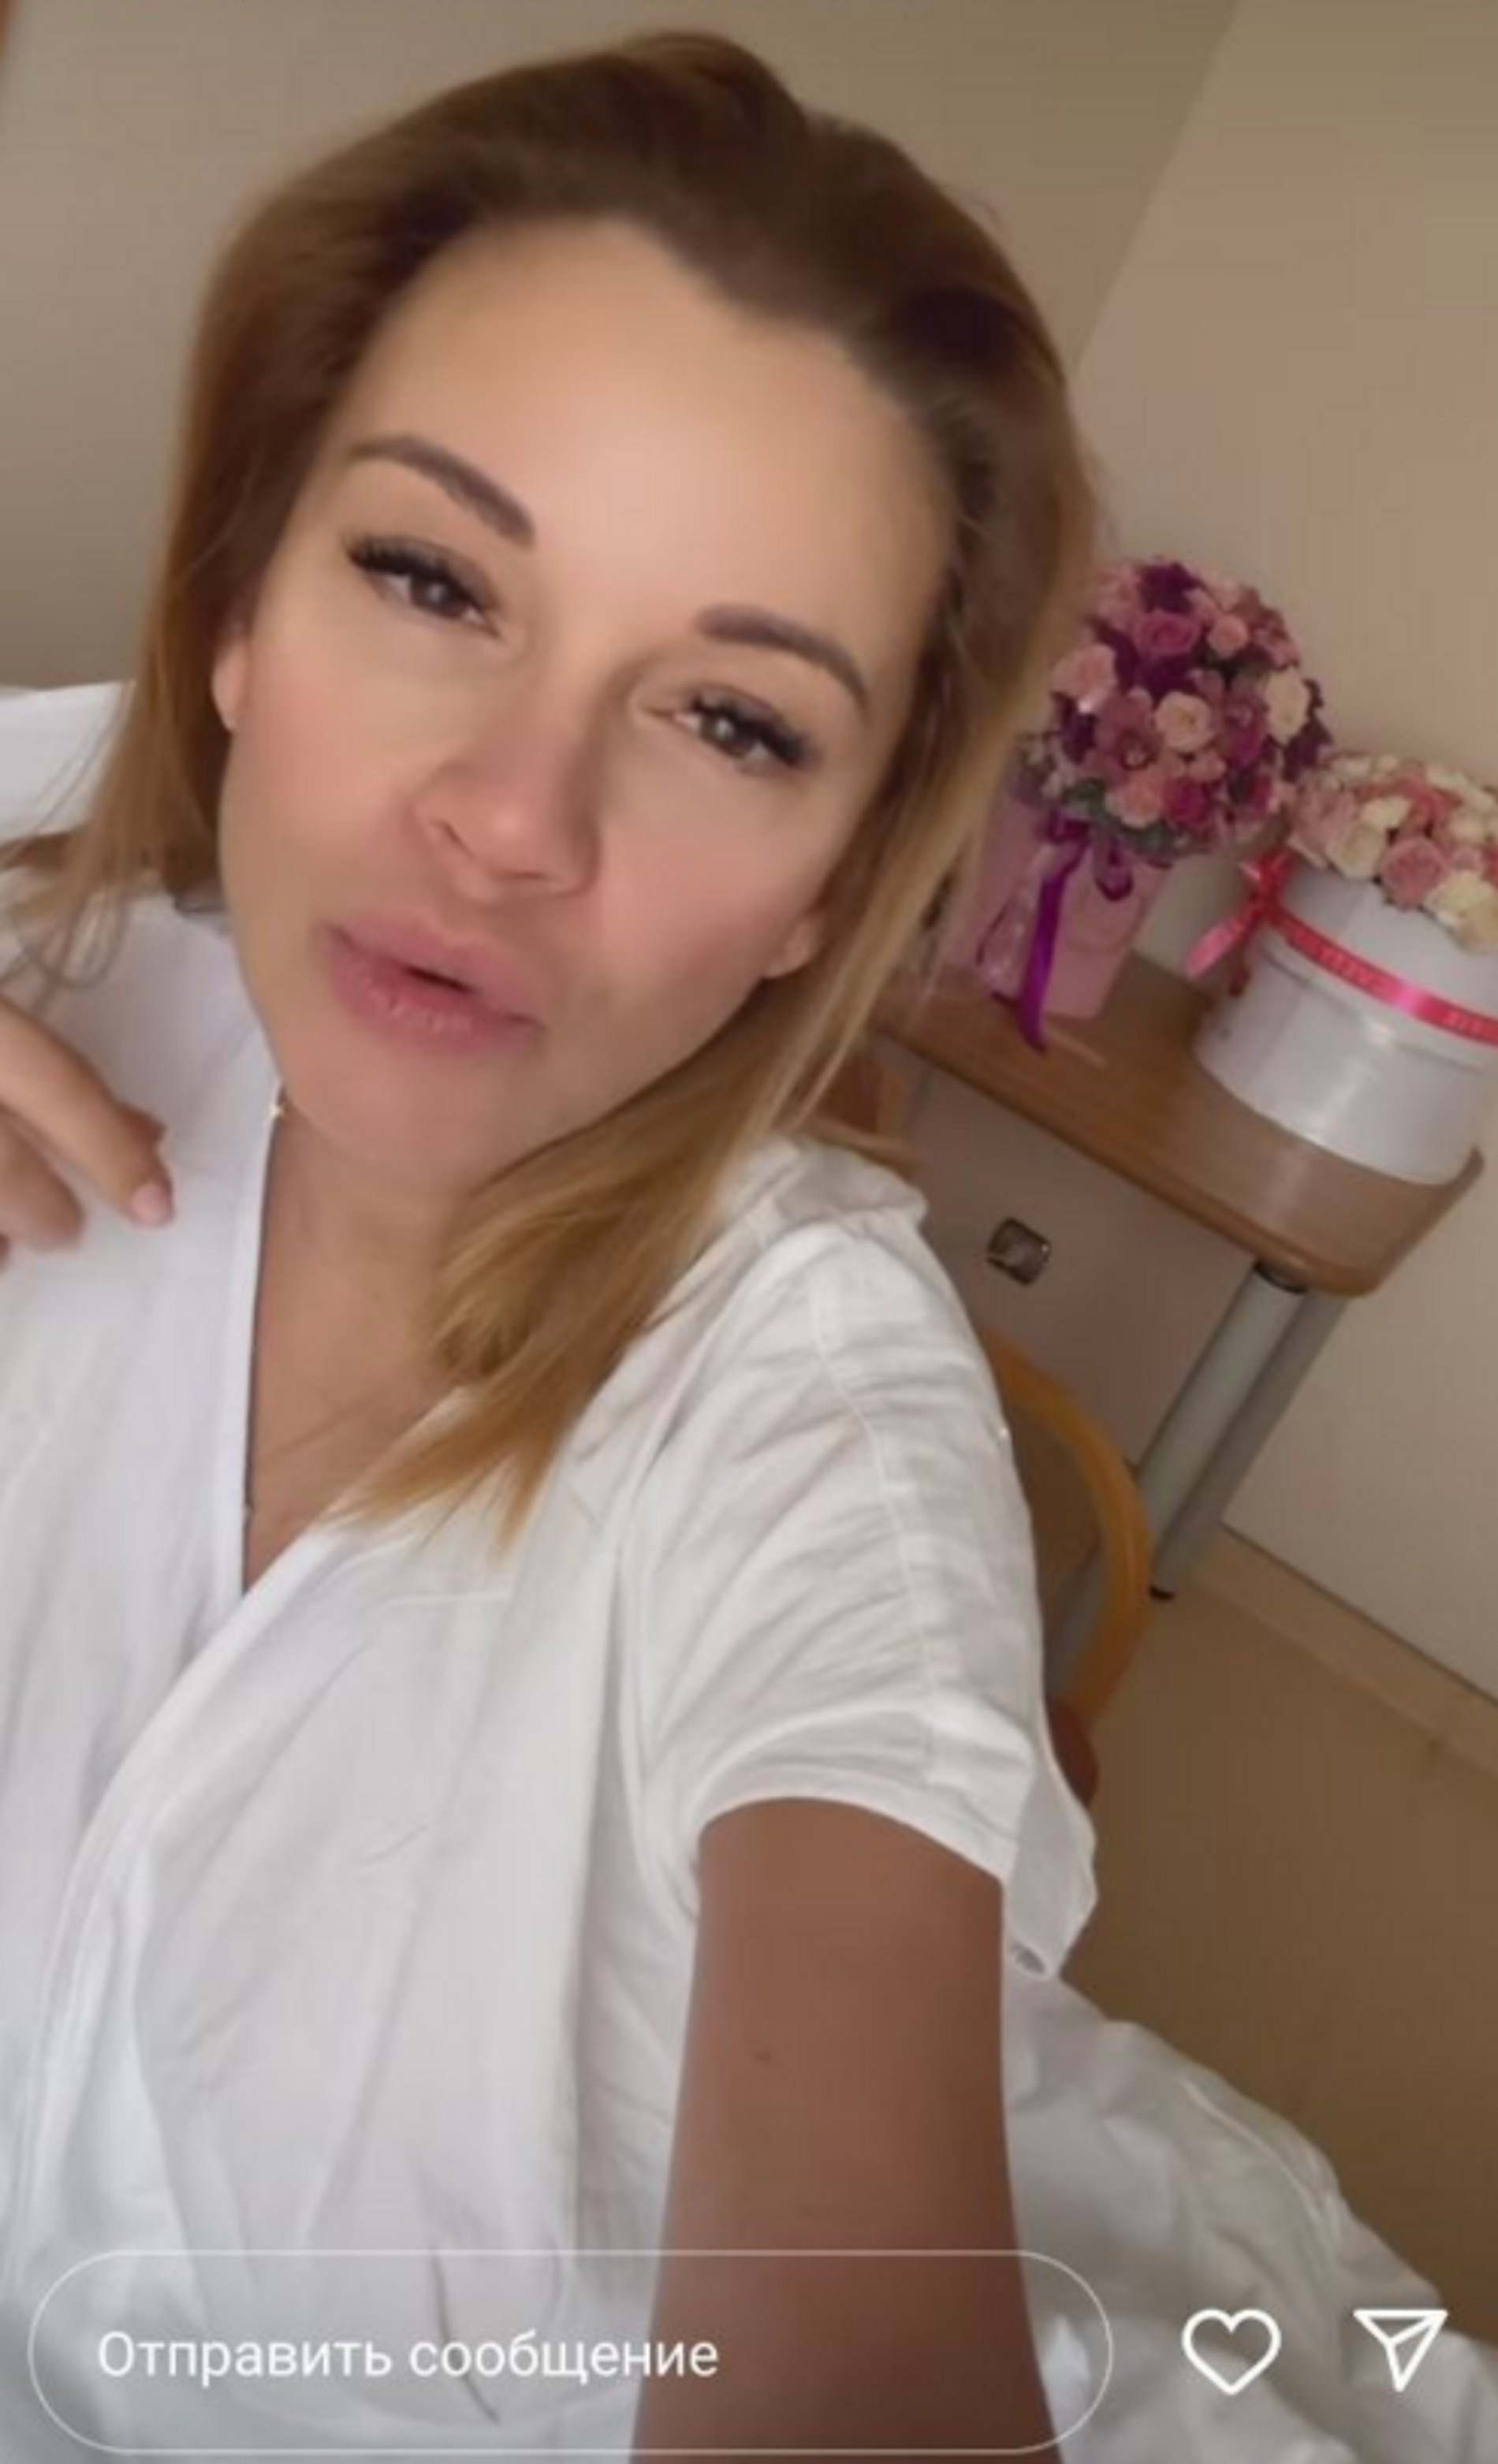 Ольга Орлова в больничной палате после родов
Фото: Инстаграм (запрещен в РФ) Ольги Орловой